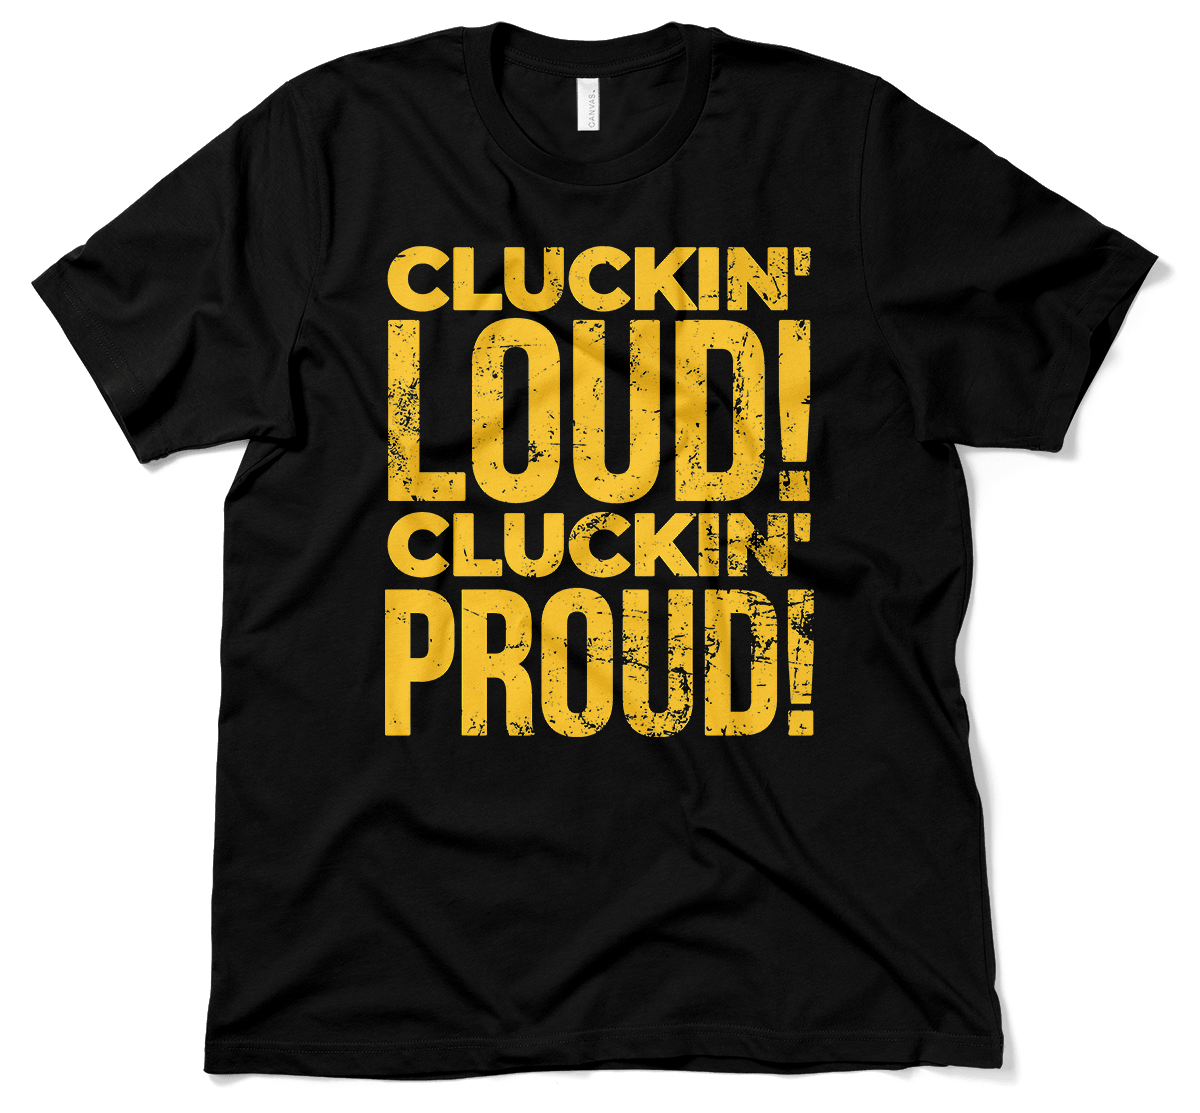 Cluckin' Loud! Cluckin' Proud!